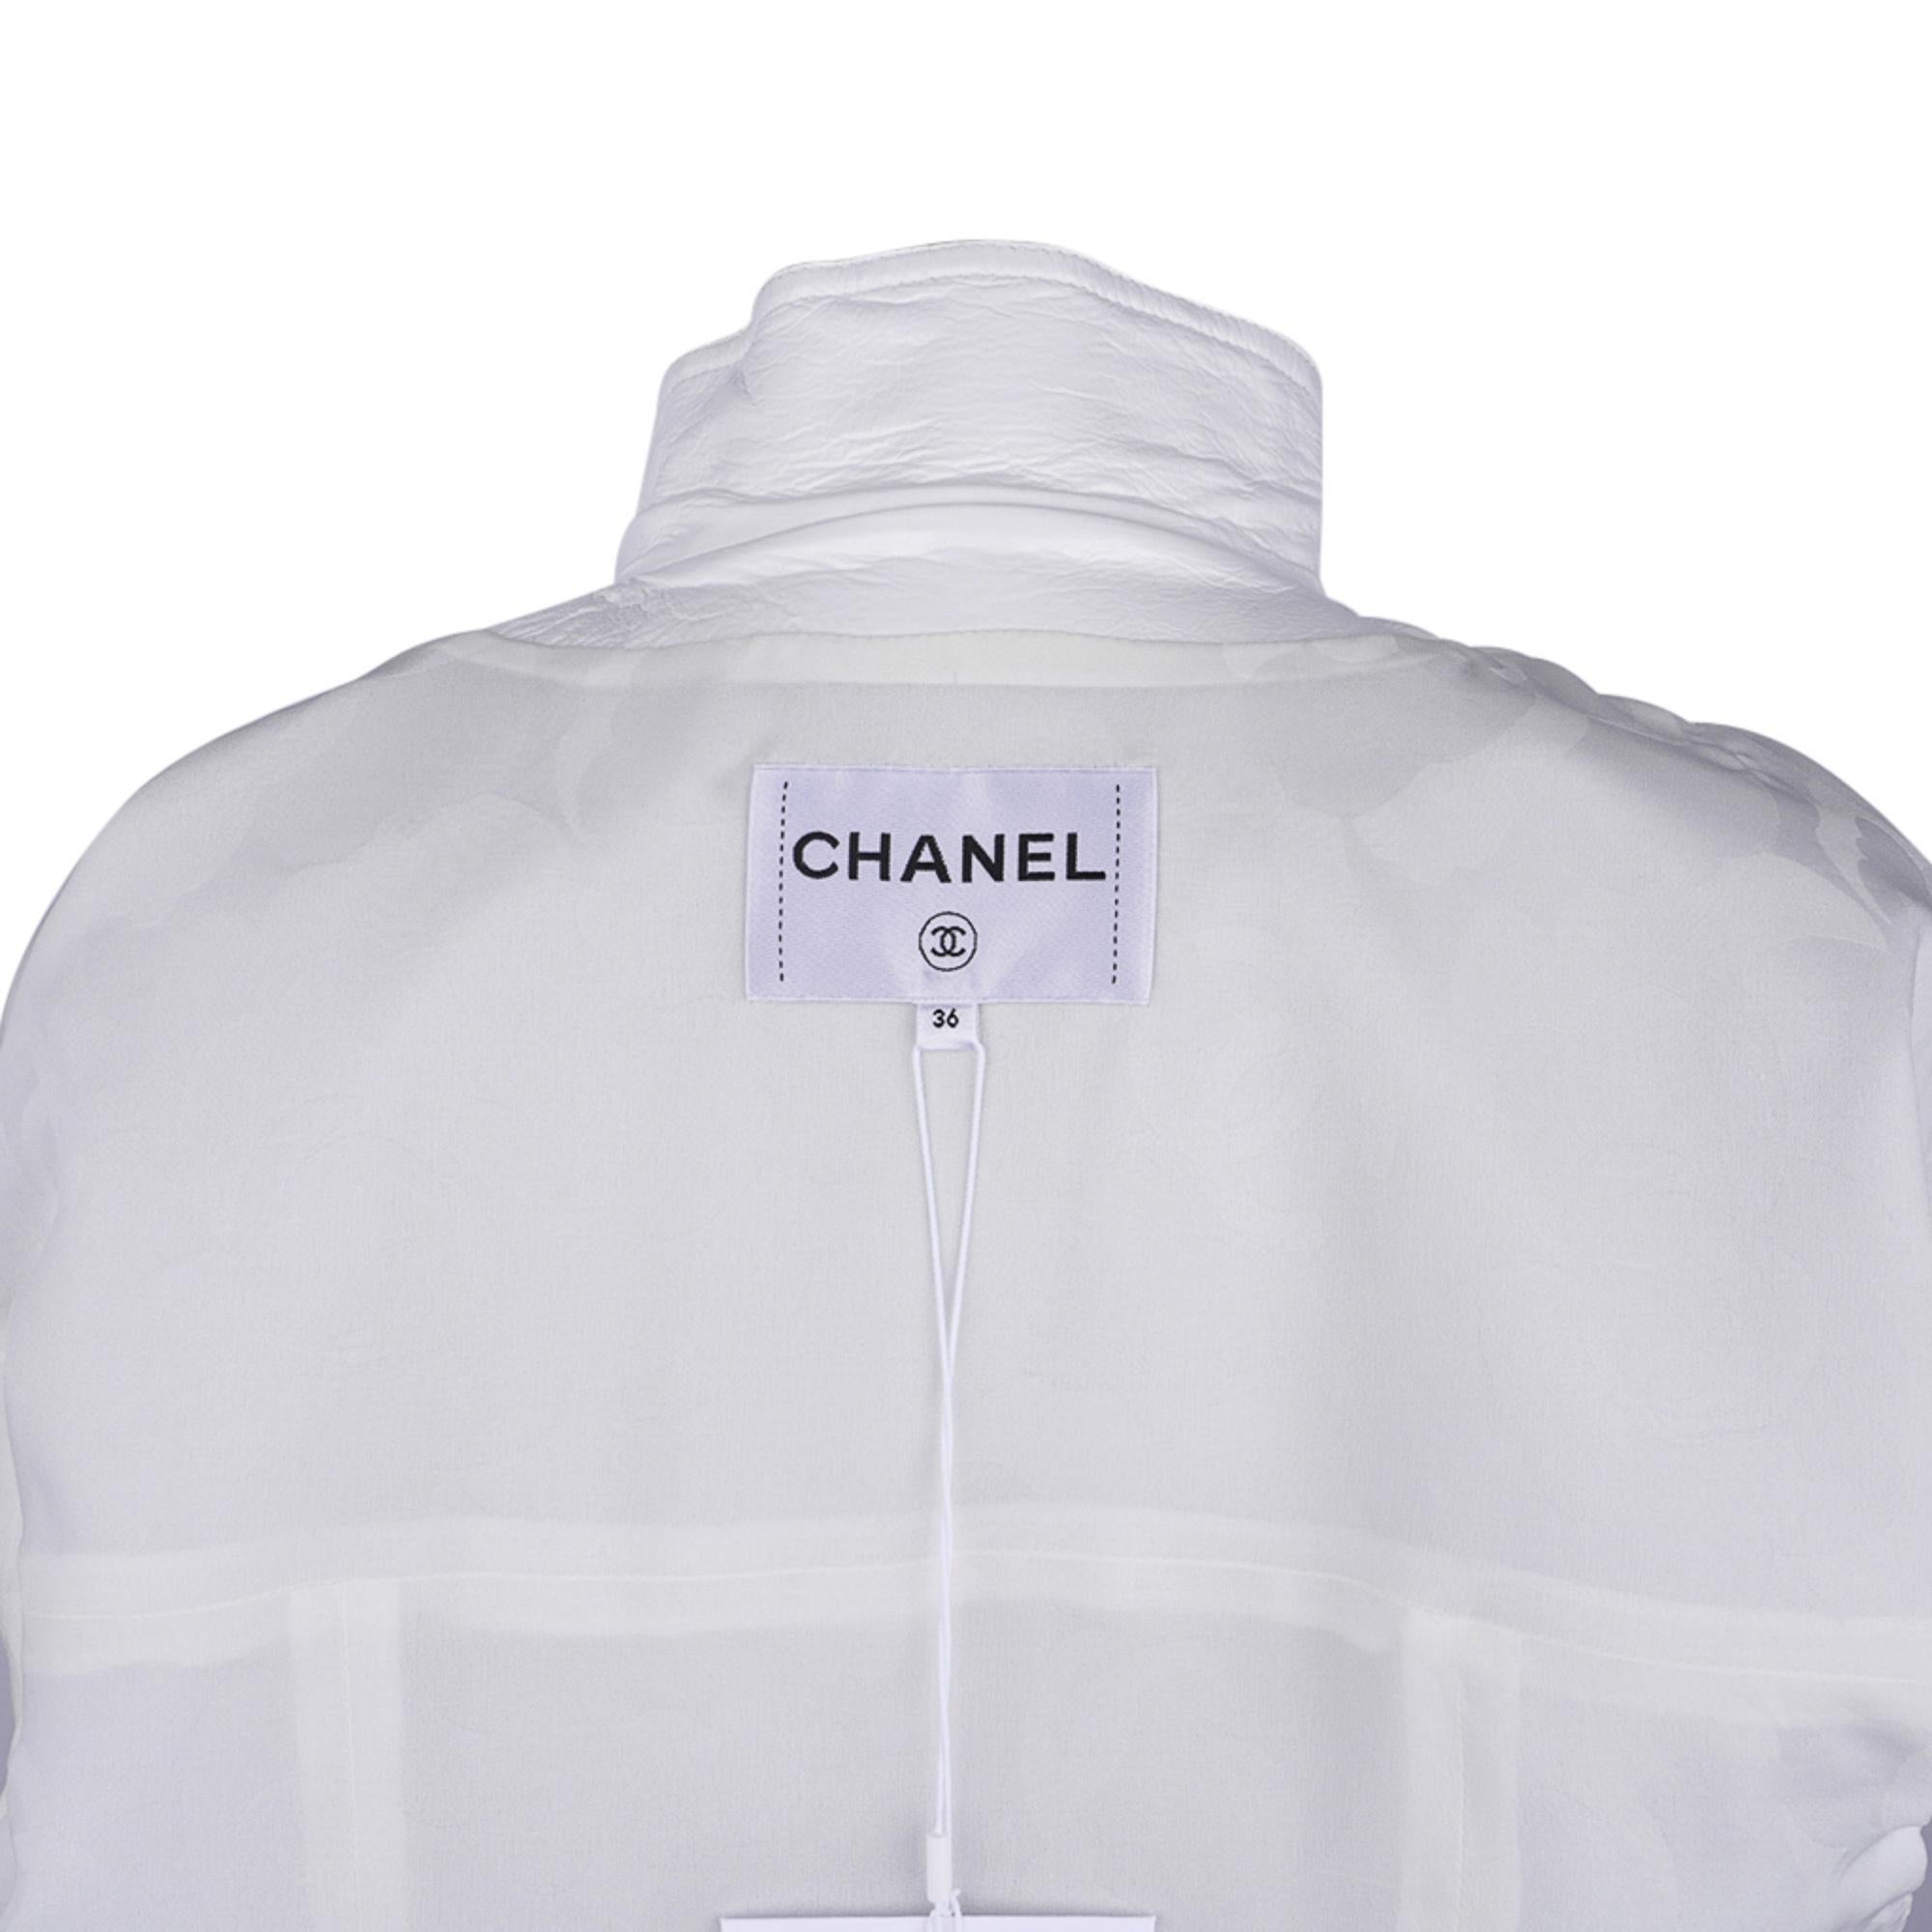 Veste courte Chanel 2020-21FW en cuir verni blanc style motard, taille 36/4, neuve avec étiquettes 8